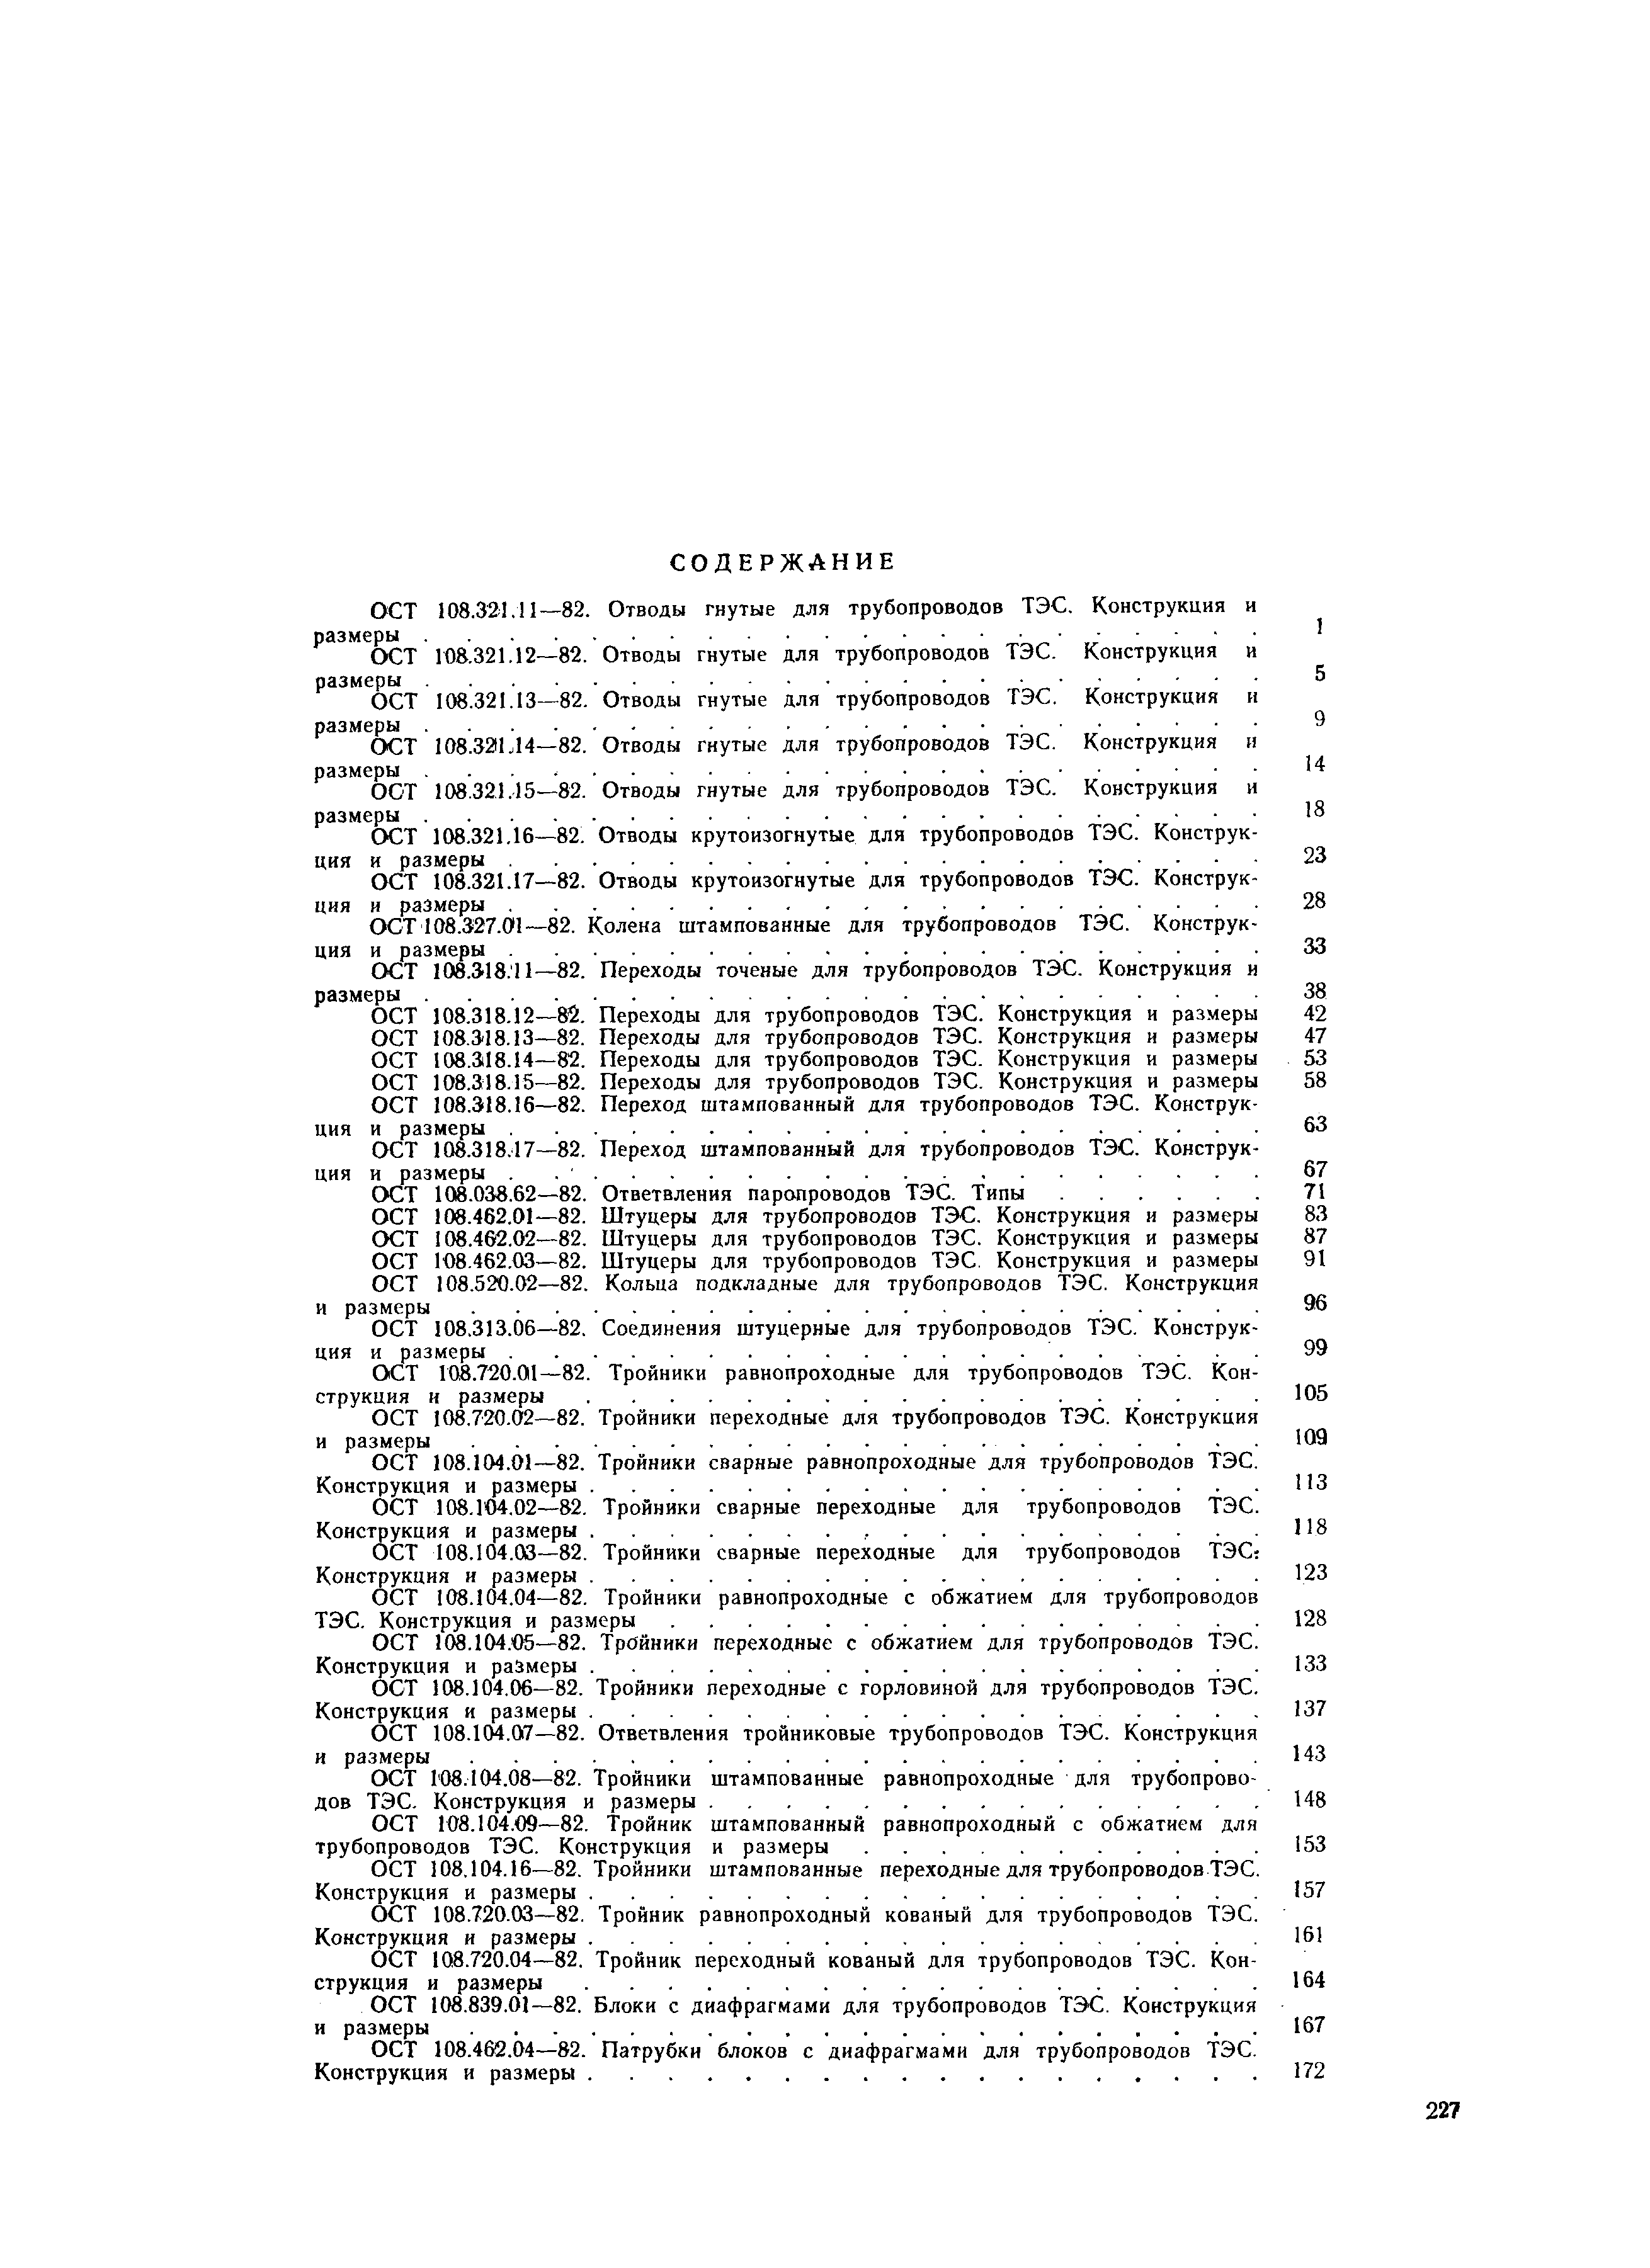 ОСТ 108.321.16-82